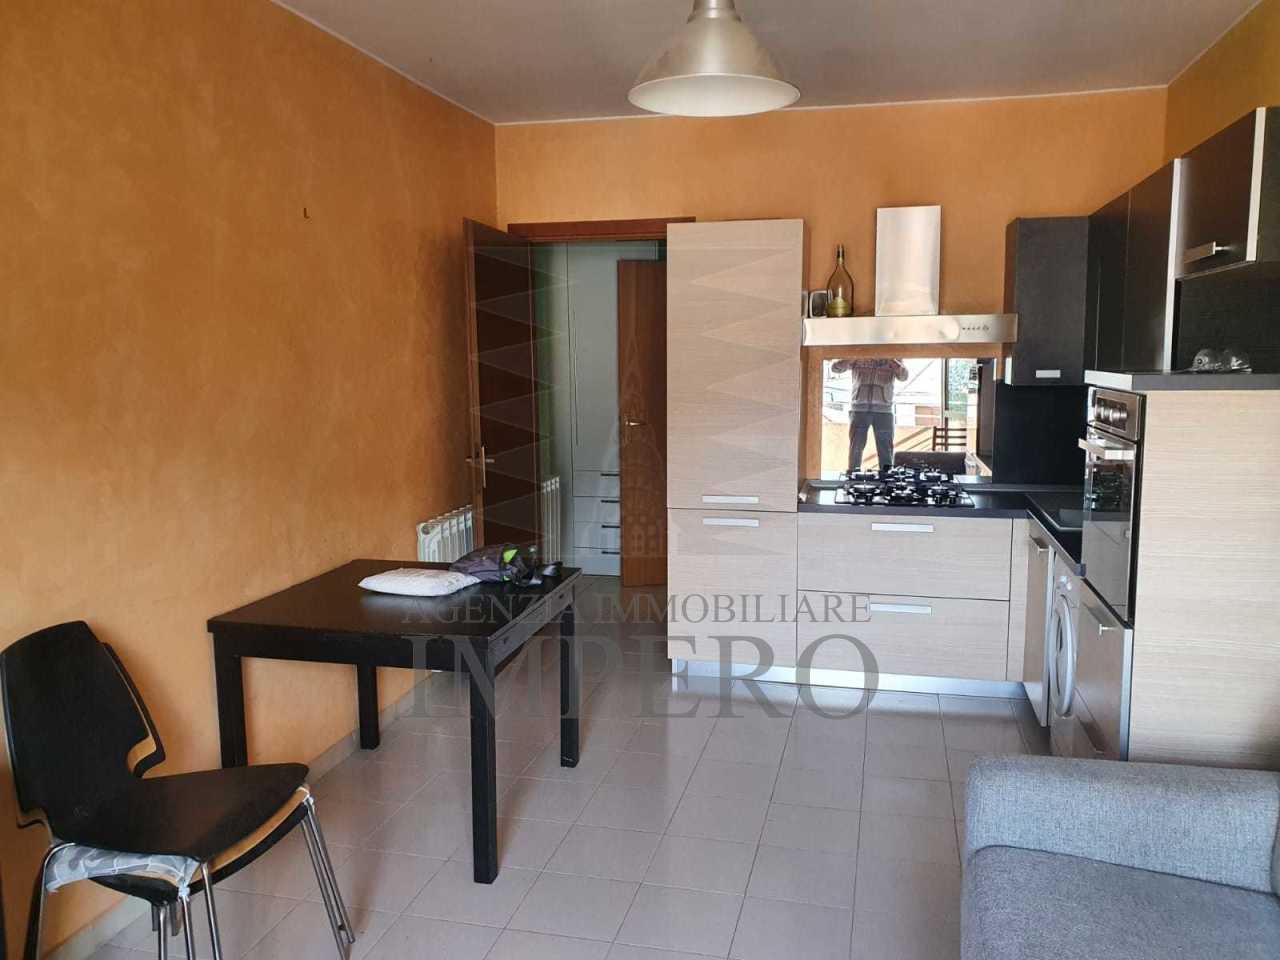 Appartamento in vendita a Ventimiglia, 1 locali, prezzo € 85.000 | PortaleAgenzieImmobiliari.it